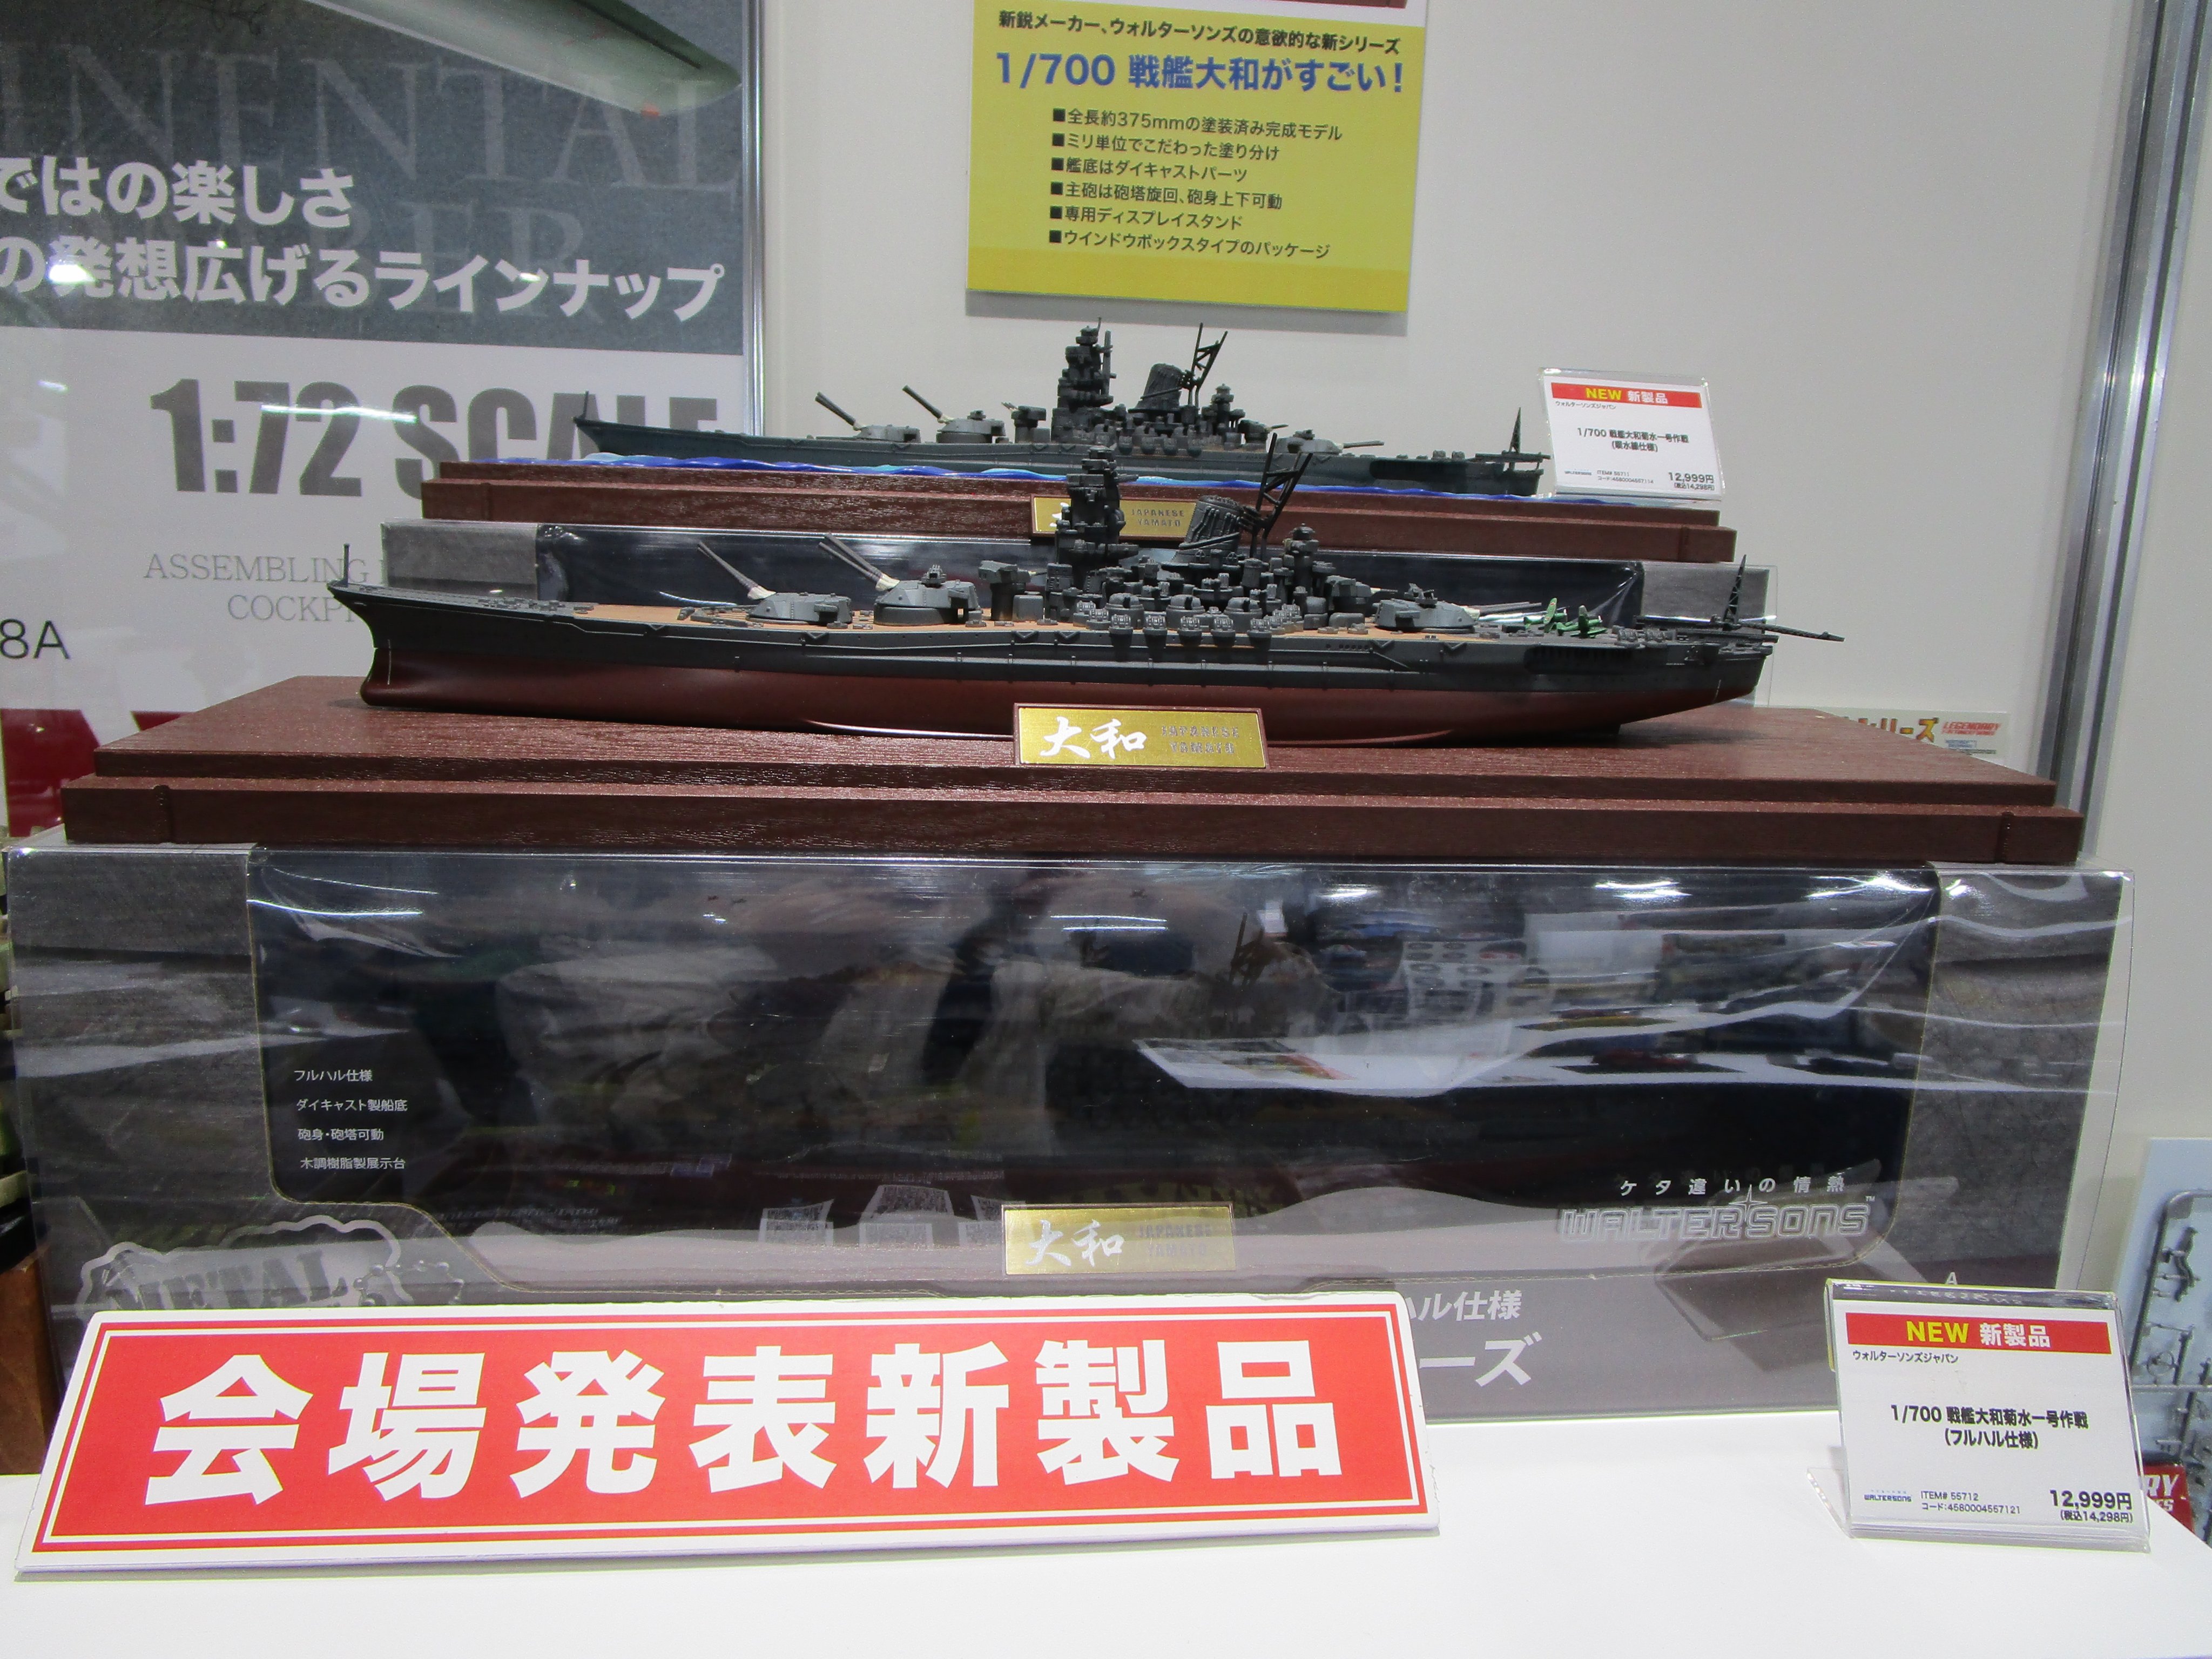 森の里くらぶ on Twitter: "第60回全日本模型ホビーショー速報です。プラッツ取り扱いメーカーの会場発表商品です。ウォルターソンズジャパンから1/700完成品の戦艦大和(洋上・フル